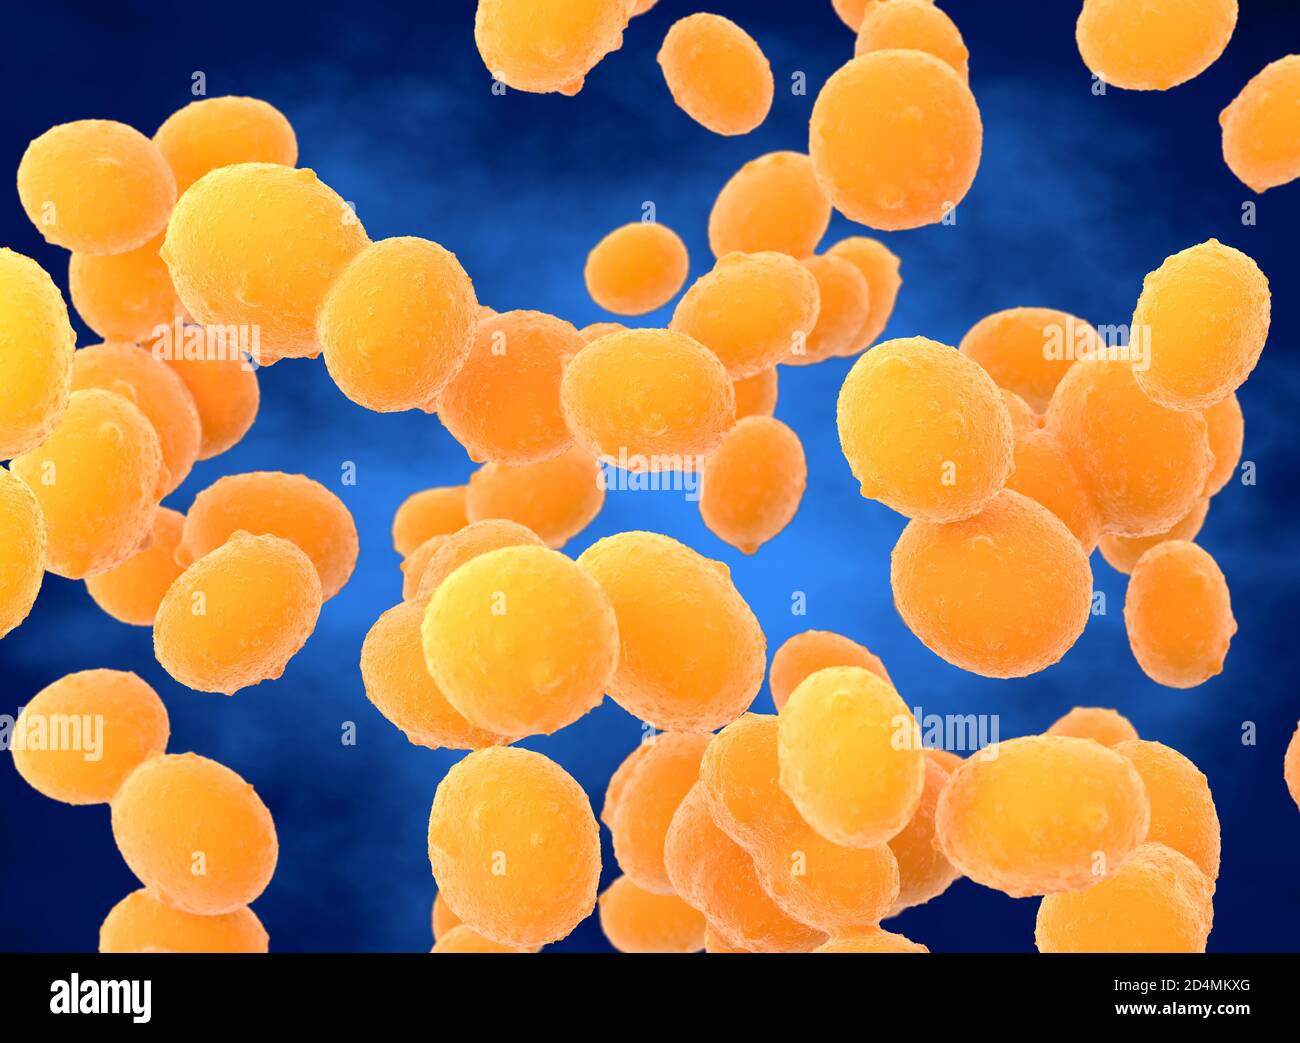 Illustrazione di batteri coccoidi di Staphylococcus aureus (MRSA). Staphylococcus  aureus è un batterio Gram-positivo che causa avvelenamento alimentare,  cenere tossica Foto stock - Alamy